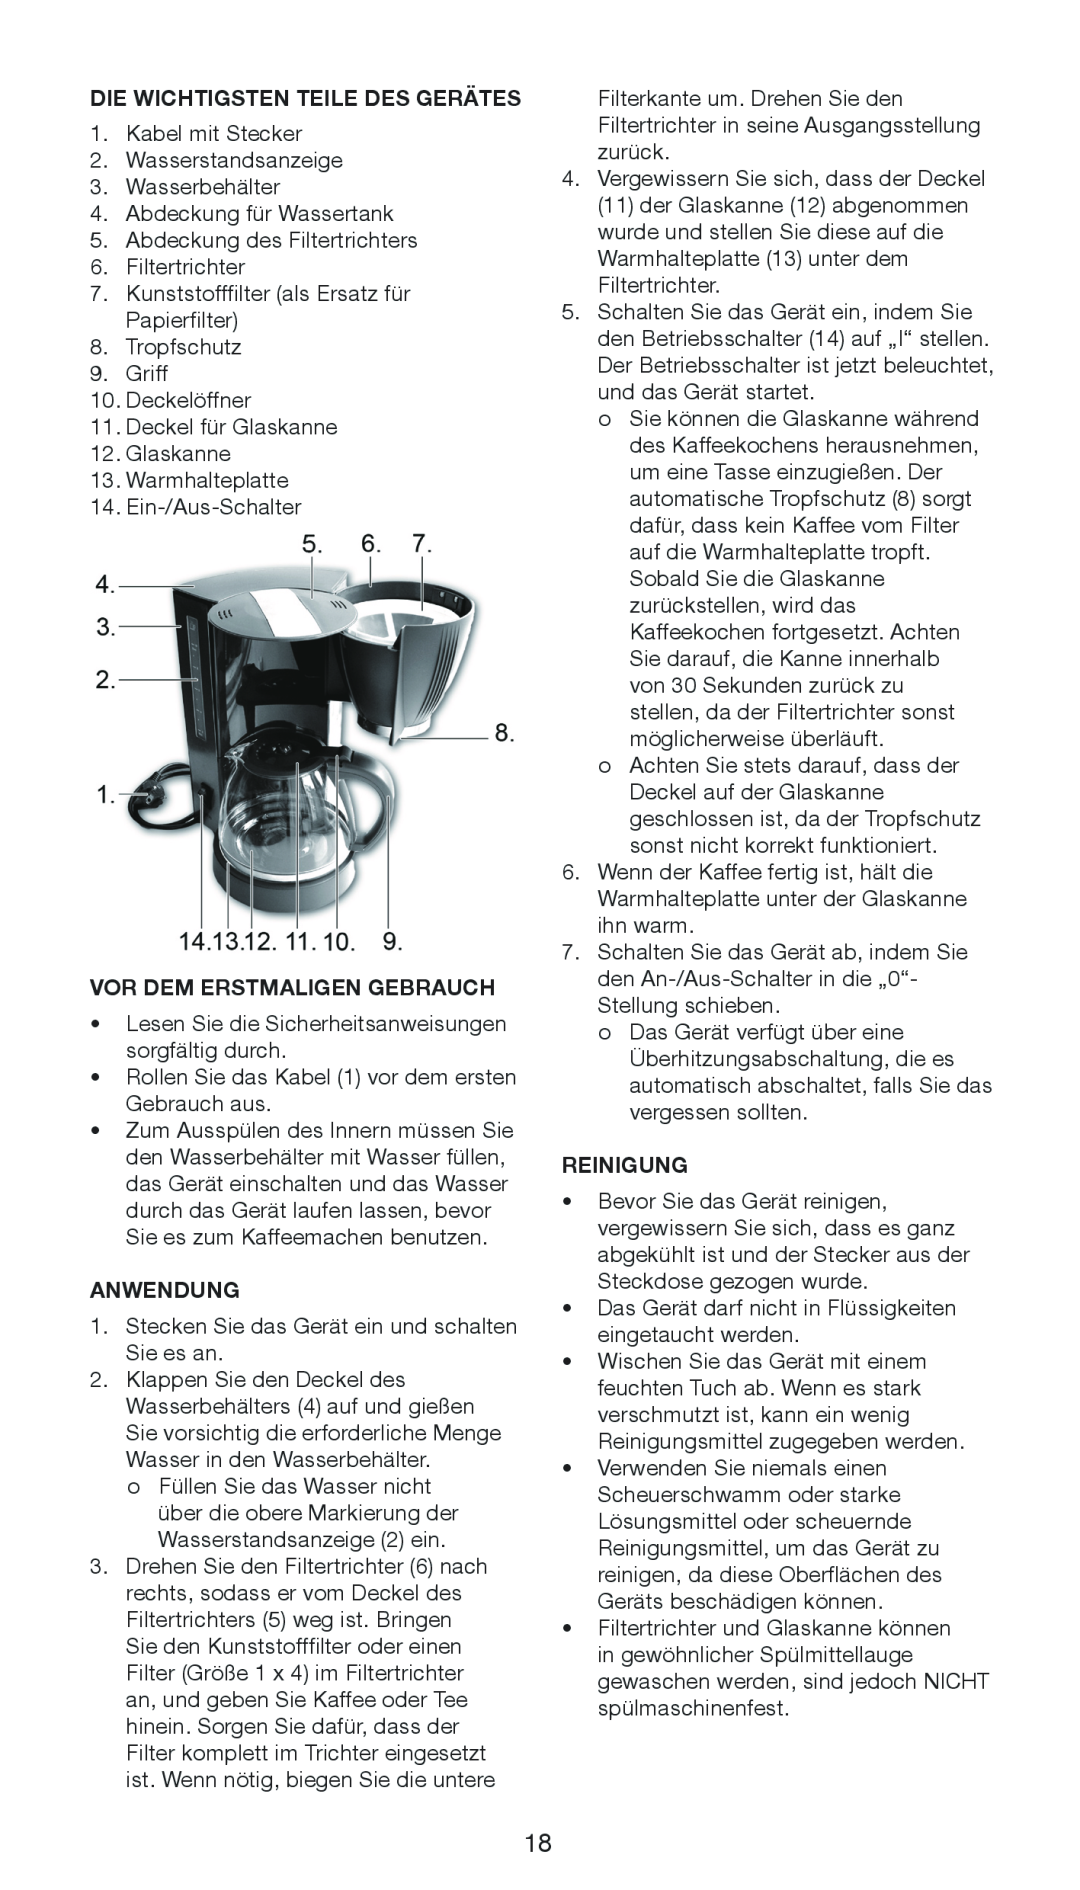 Melissa 645-104 manual Die Wichtigsten Teile Des Gerätes, Vor Dem Erstmaligen Gebrauch, Anwendung, Reinigung 